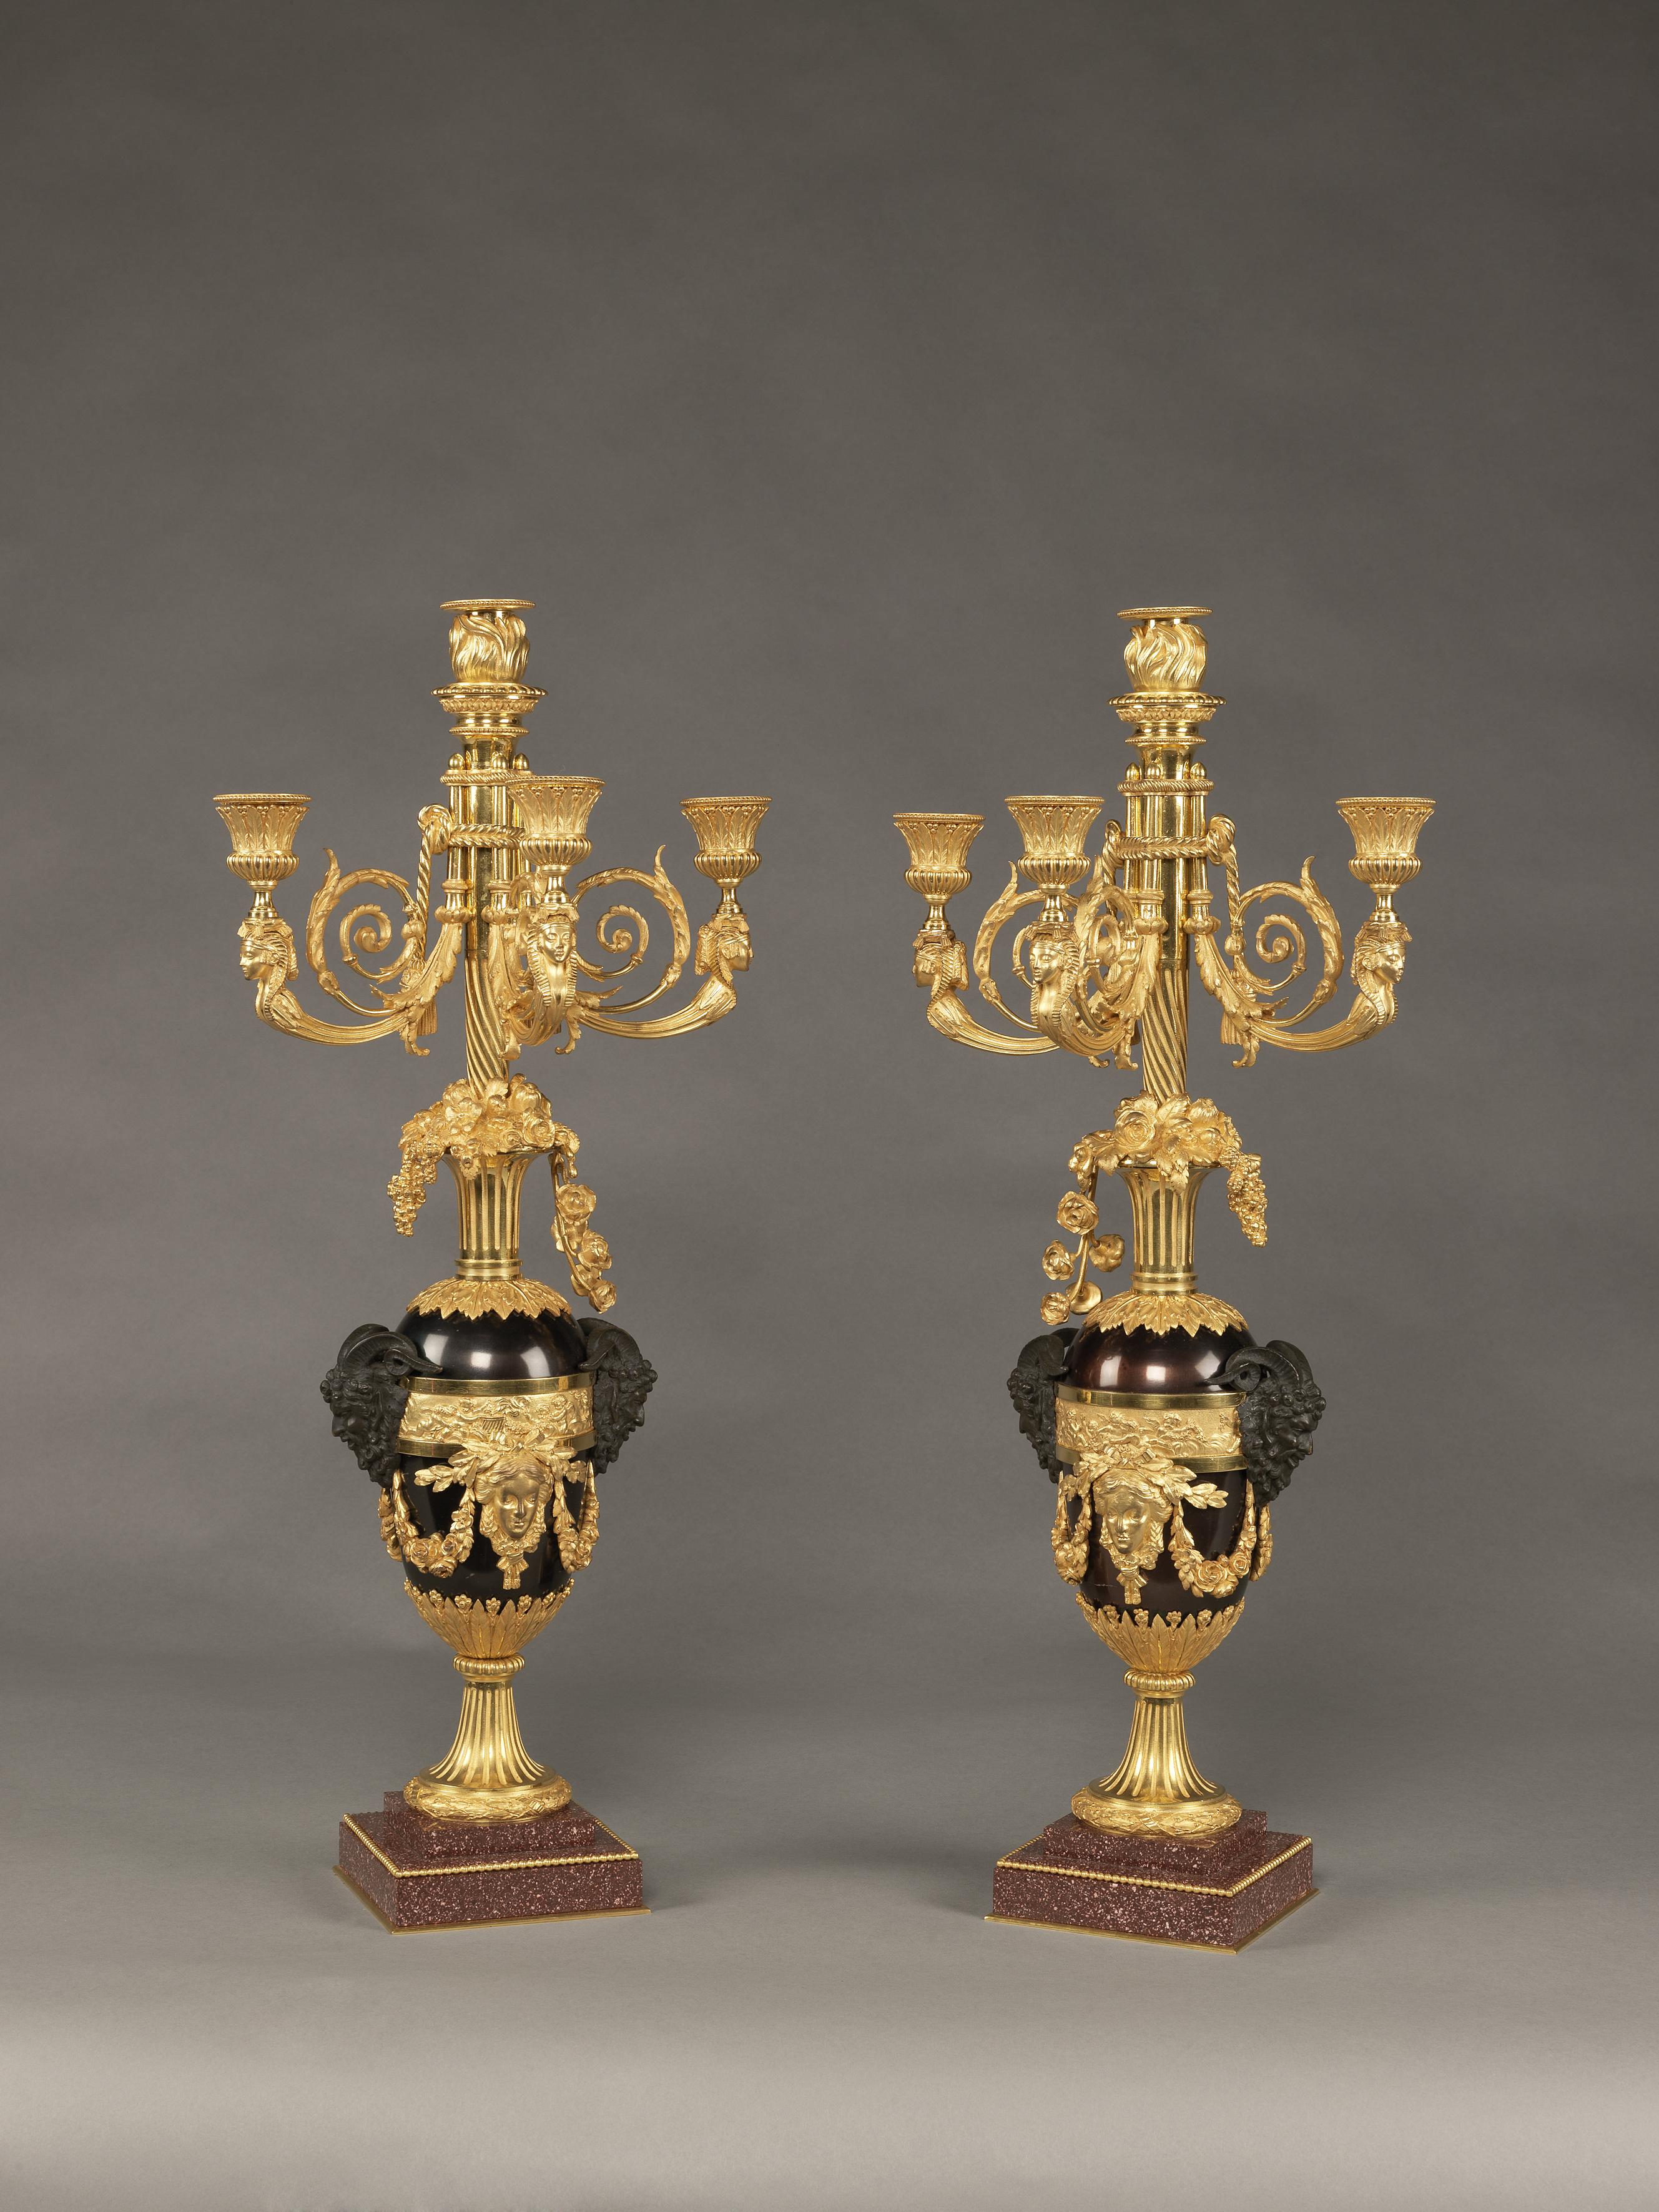 Ein bedeutendes Paar vierflammiger Kandelaber aus patinierter und vergoldeter Bronze im Stil Ludwigs XVI. nach dem Modell von François Rémond, jetzt in der Sammlung Wallace, London.

Französisch, um 1830. 

Auf einem Bronzering gestempelt 'RG'.